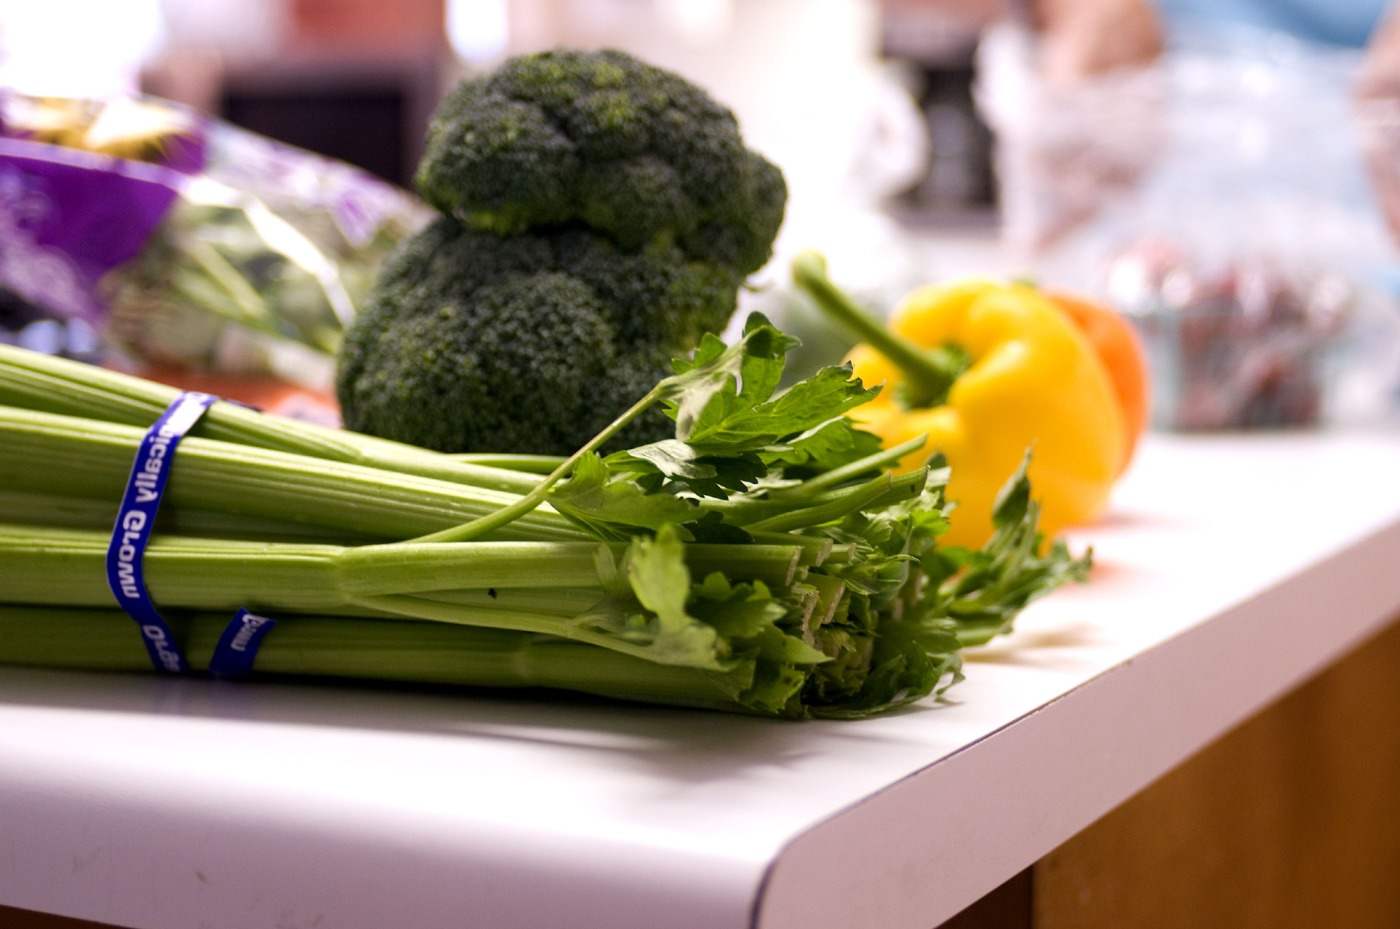 Föredra ekologiska grönsaker som selleri, gul paprika och broccoli som mat på sommaren